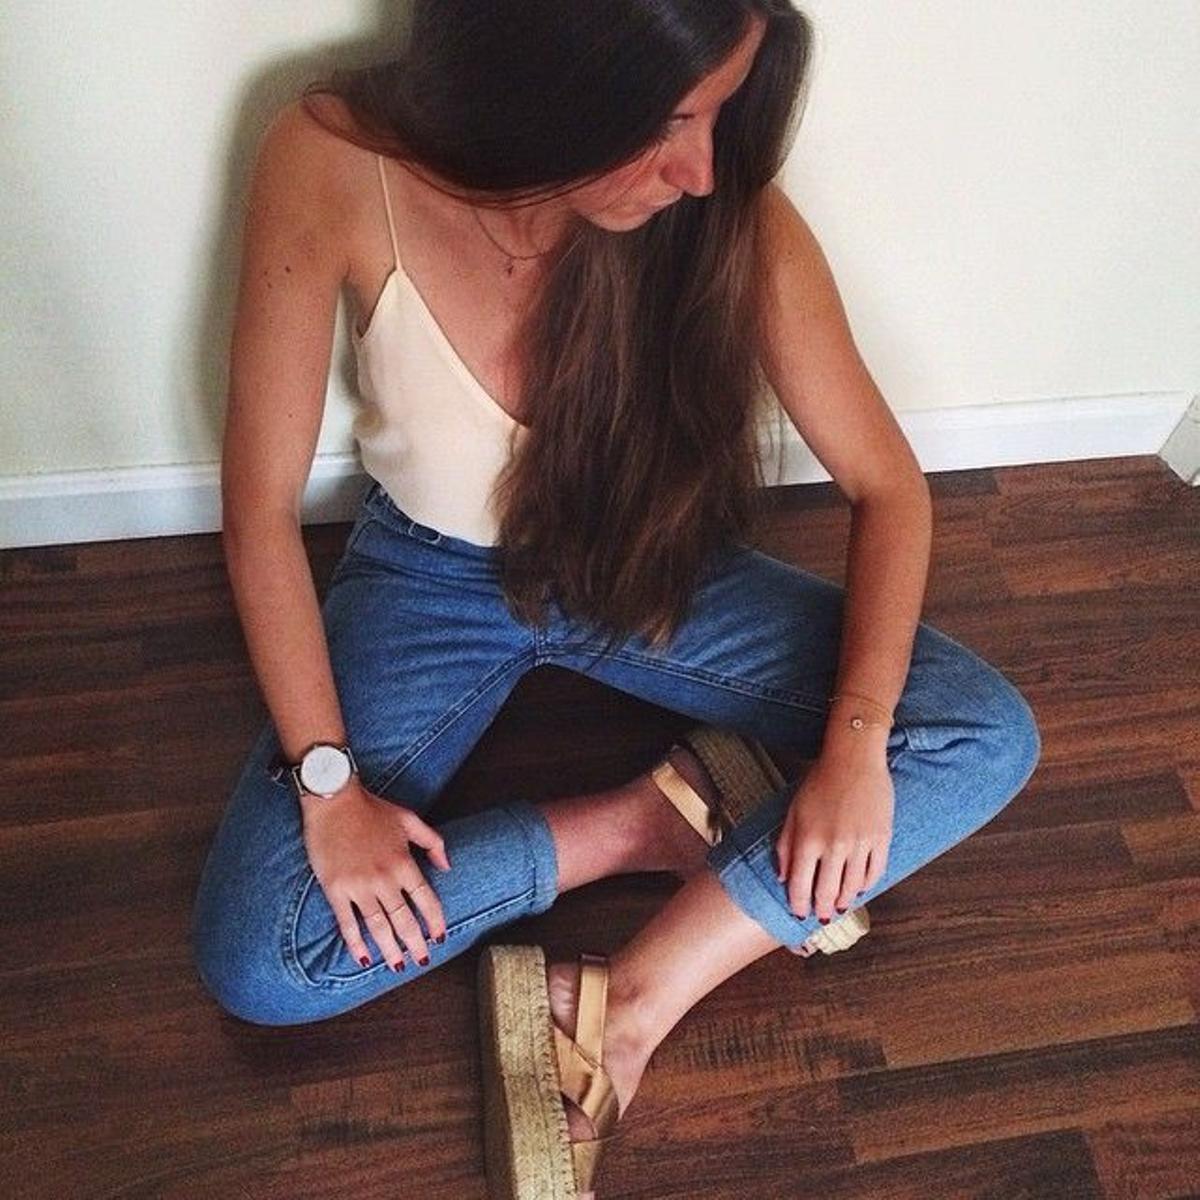 Dobladillo de pantalón en Instagram, Elisa Serrano